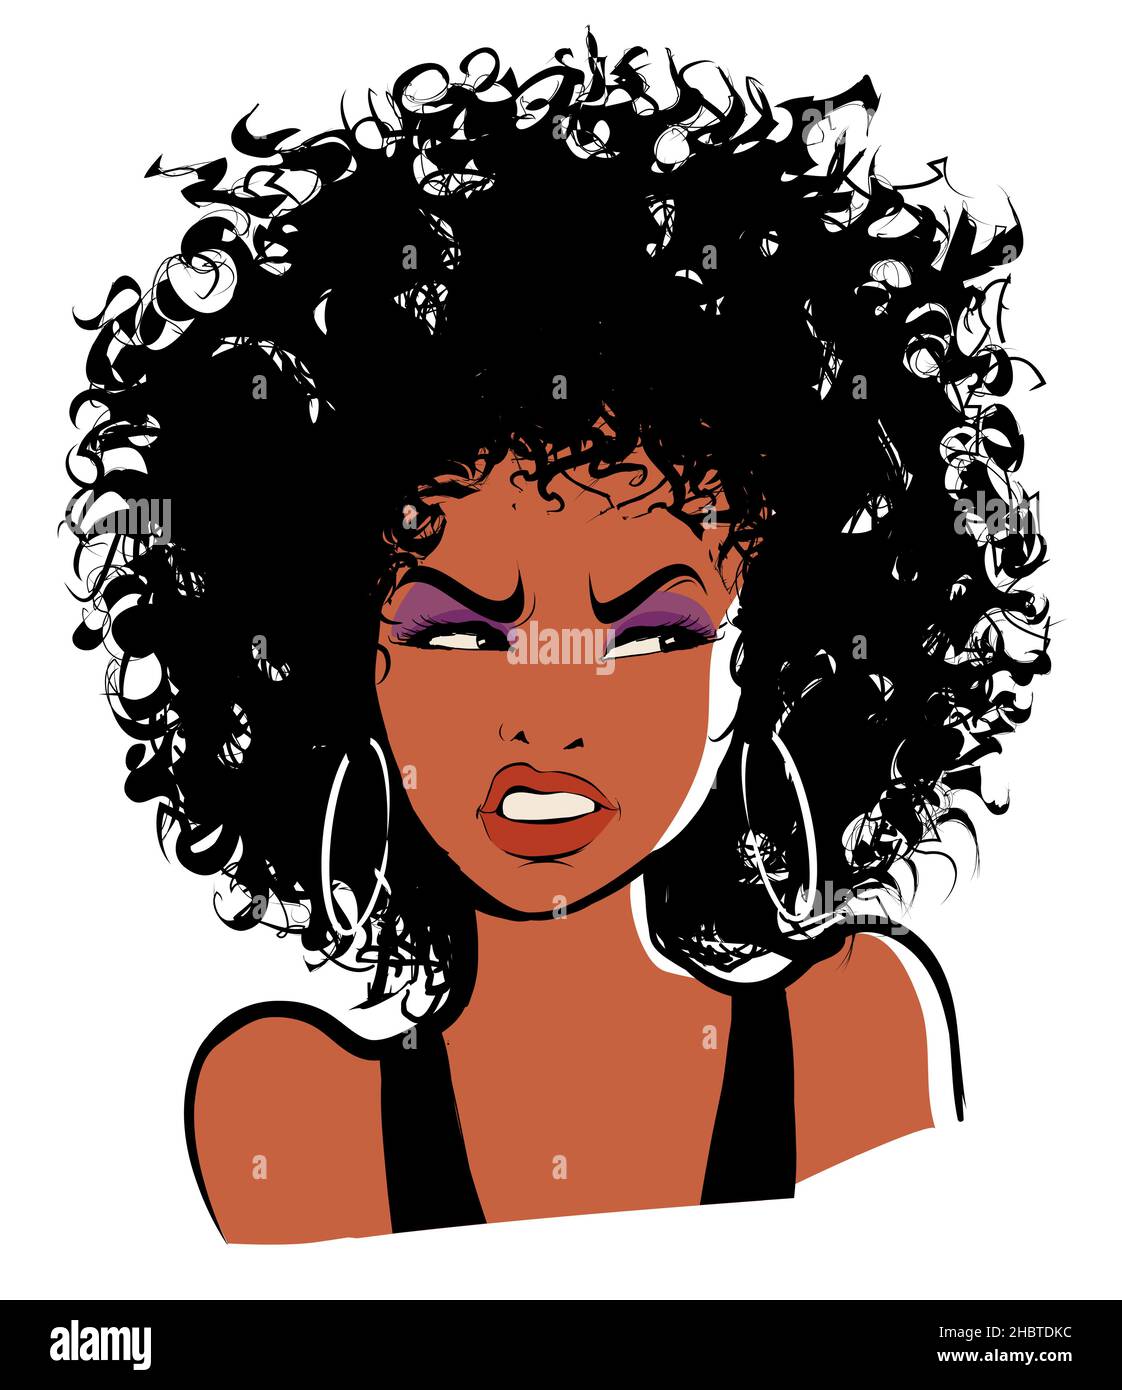 Ritratto di una ragazza con afro-hairstyle in stile cartoon, espressione di rabbia - illustrazione vettoriale Illustrazione Vettoriale